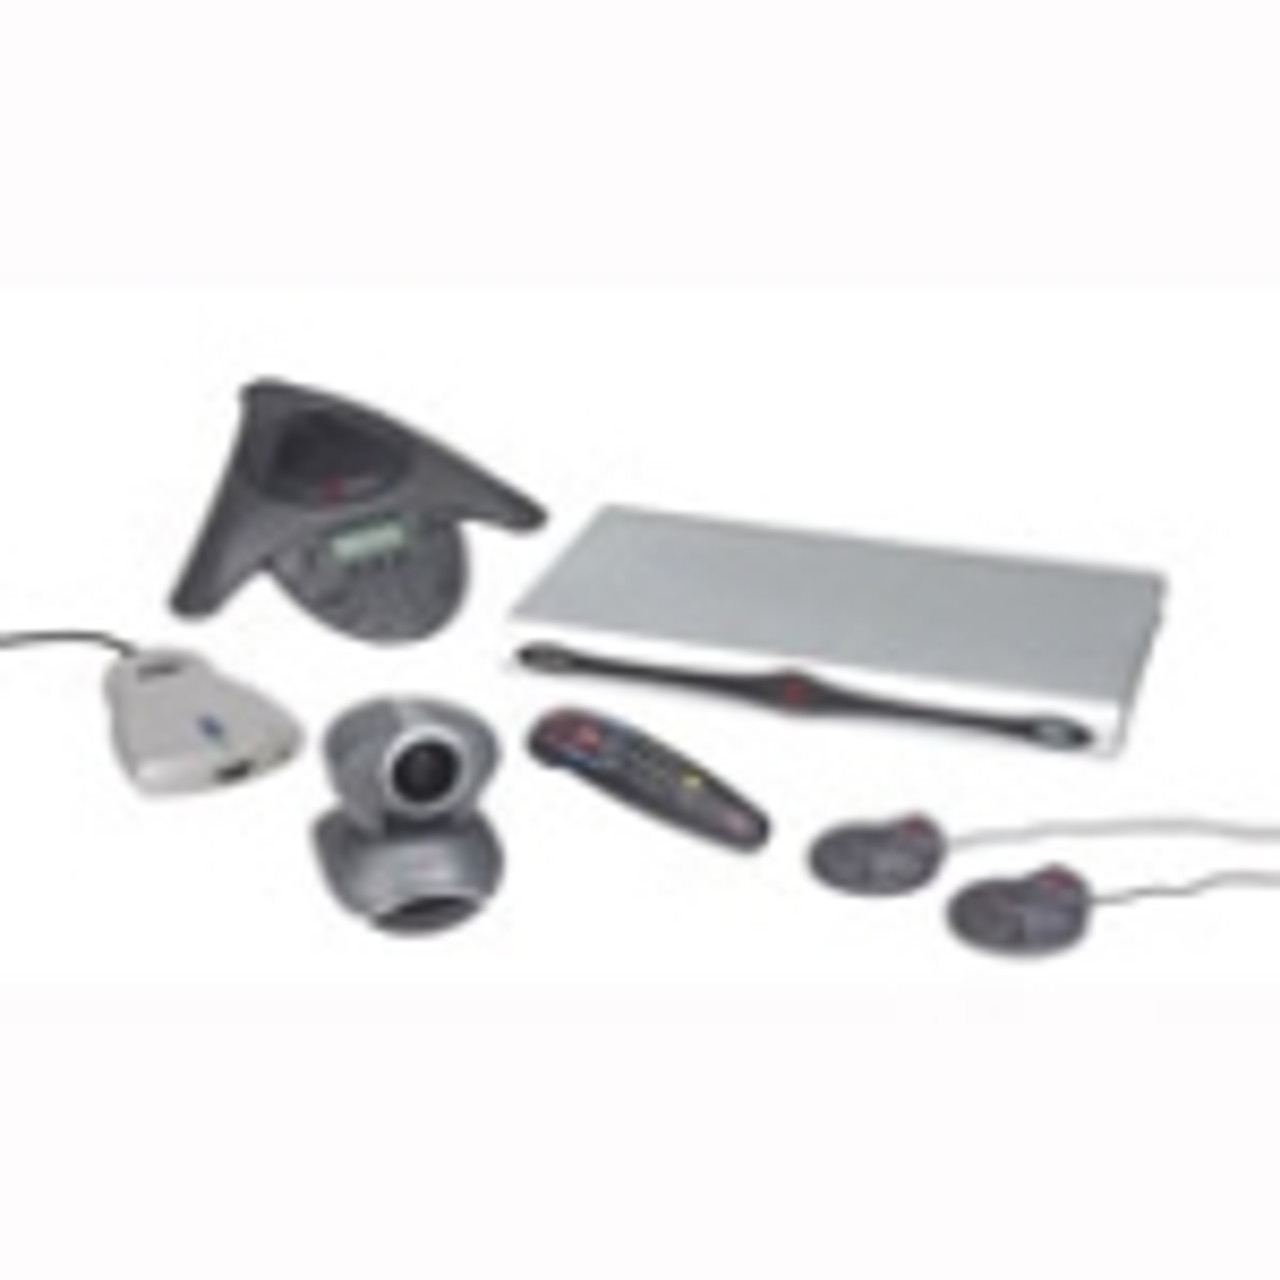 7200-22760-001 PolyCom Vsx 8400 Presenter Voice-tracker W/ Vtx 1000